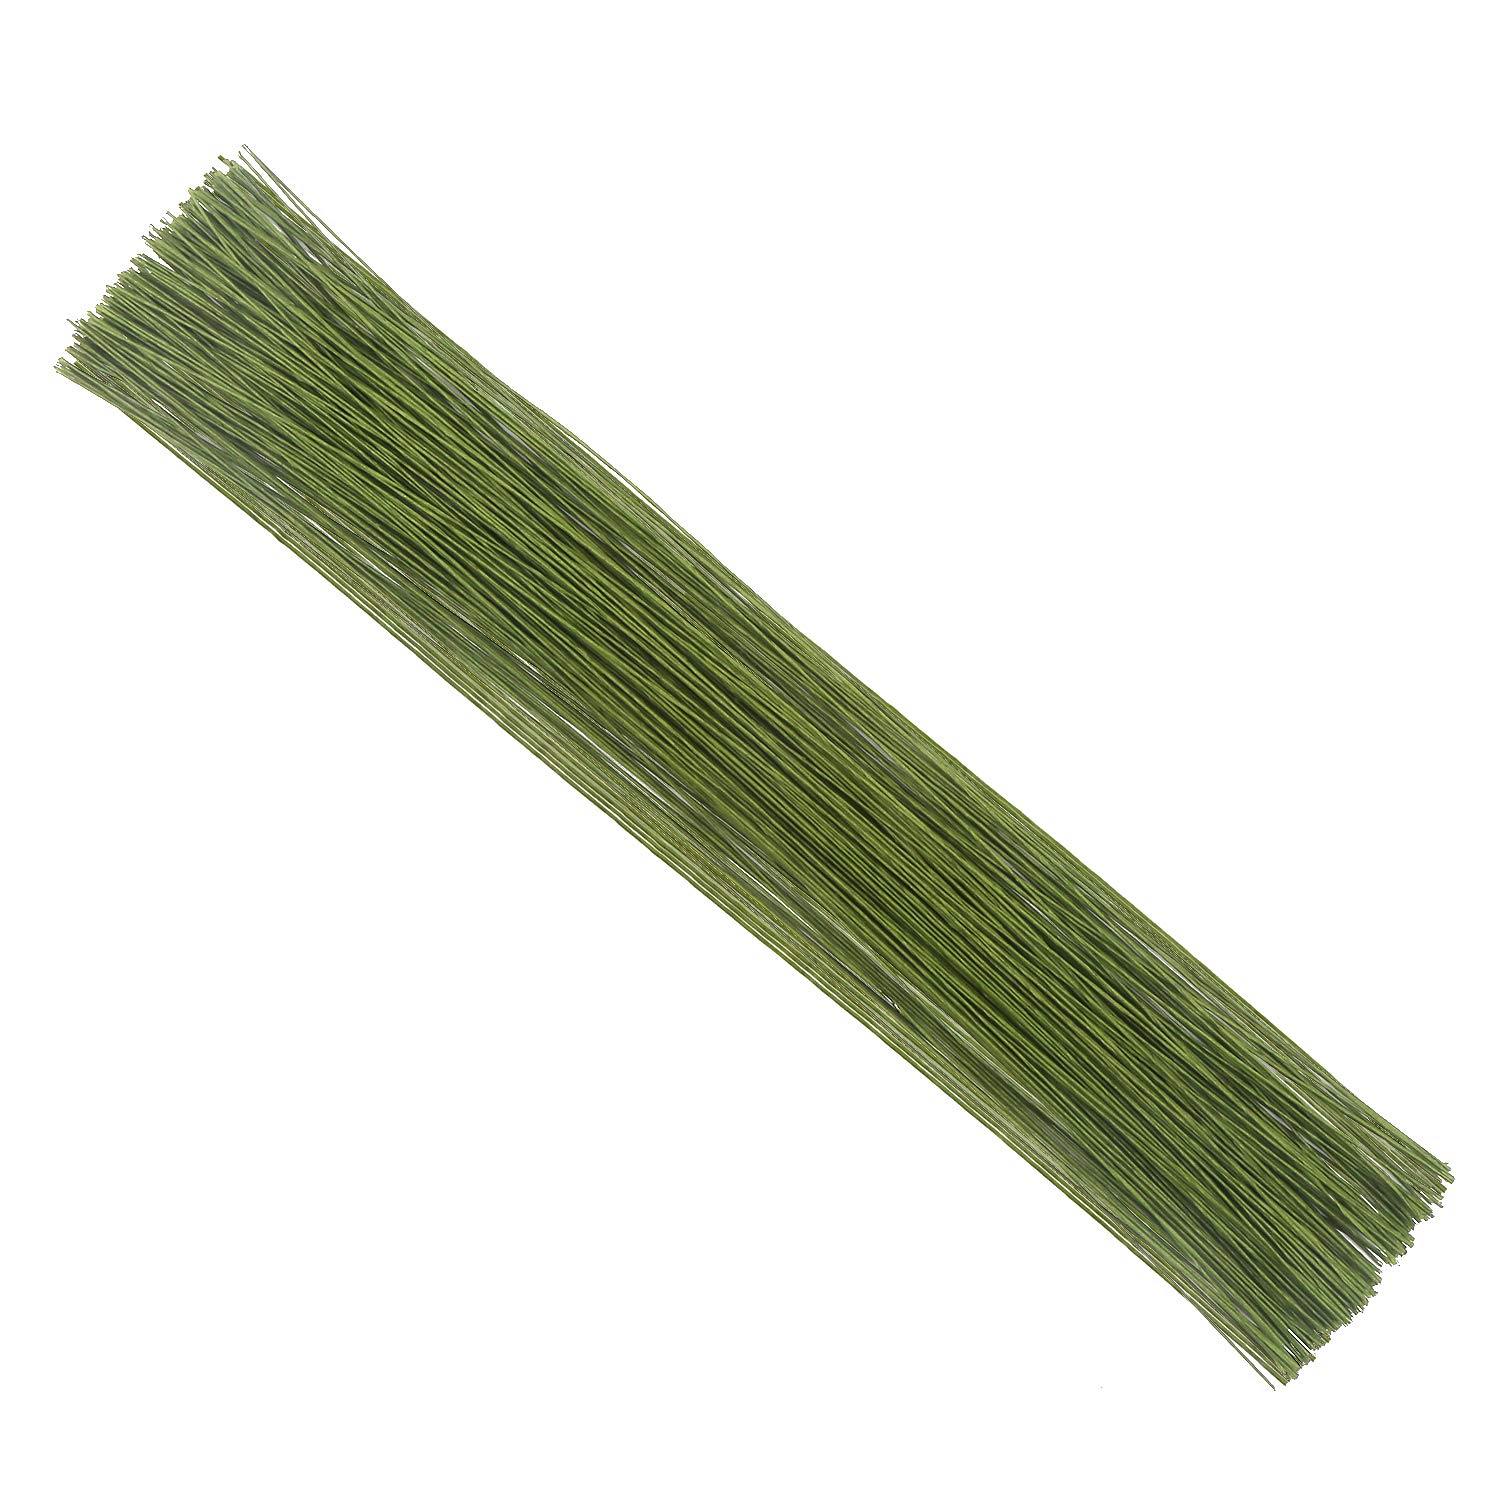 CCINEE 24 Gauge Dark Green Floral Wire Stem for Flower Arrangement Craft  Supply 16 Inch 200PCS